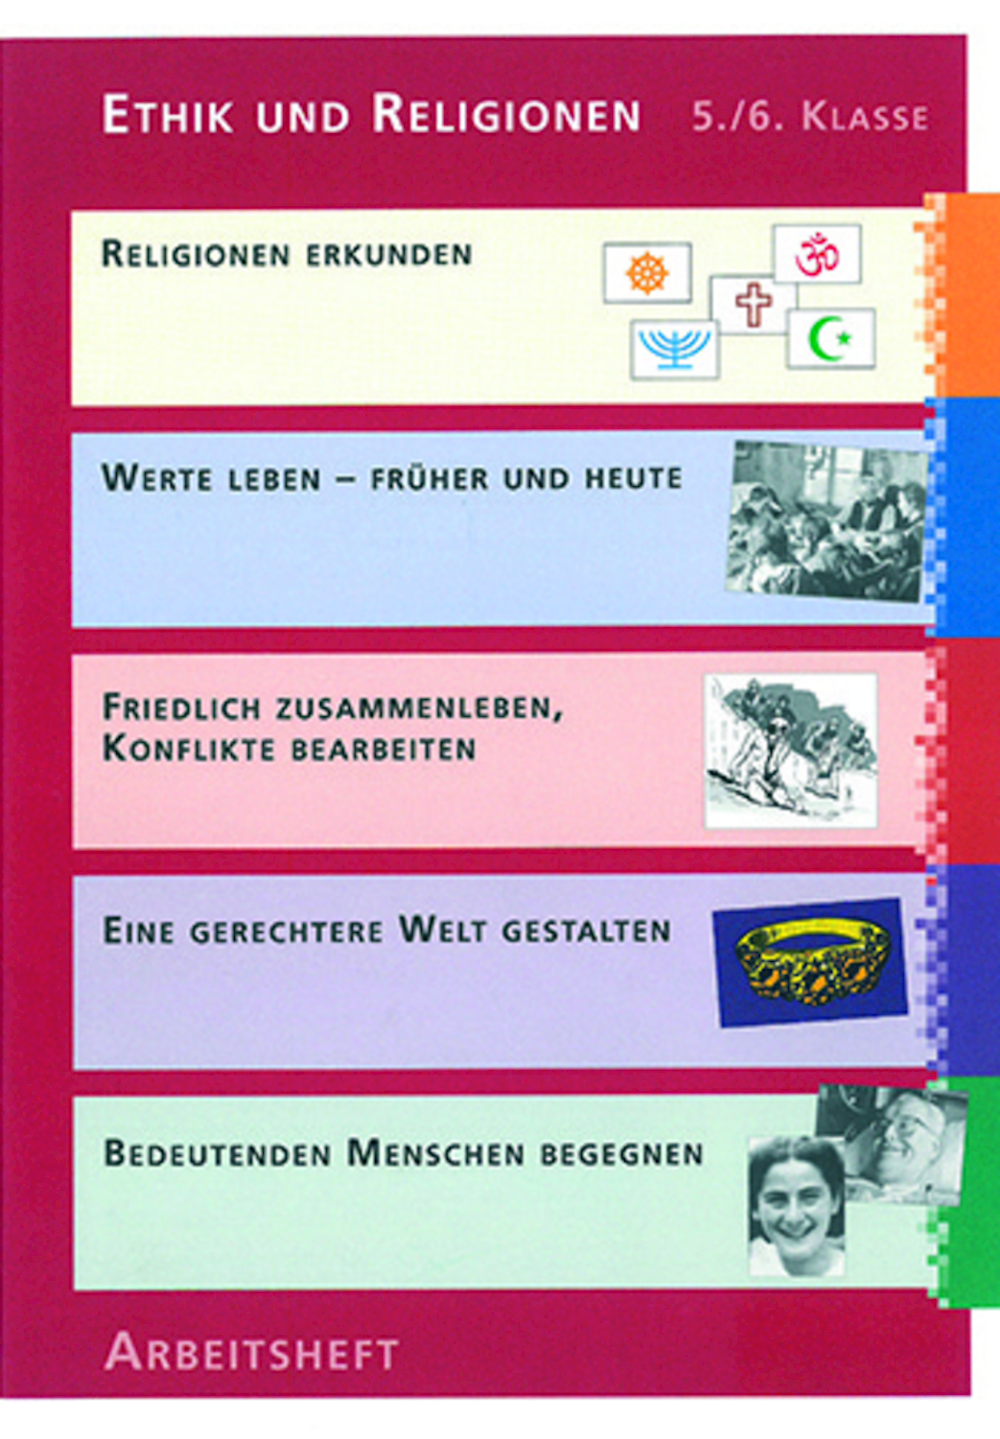 Ethik und Religionen 5./6. Klasse Kommentar